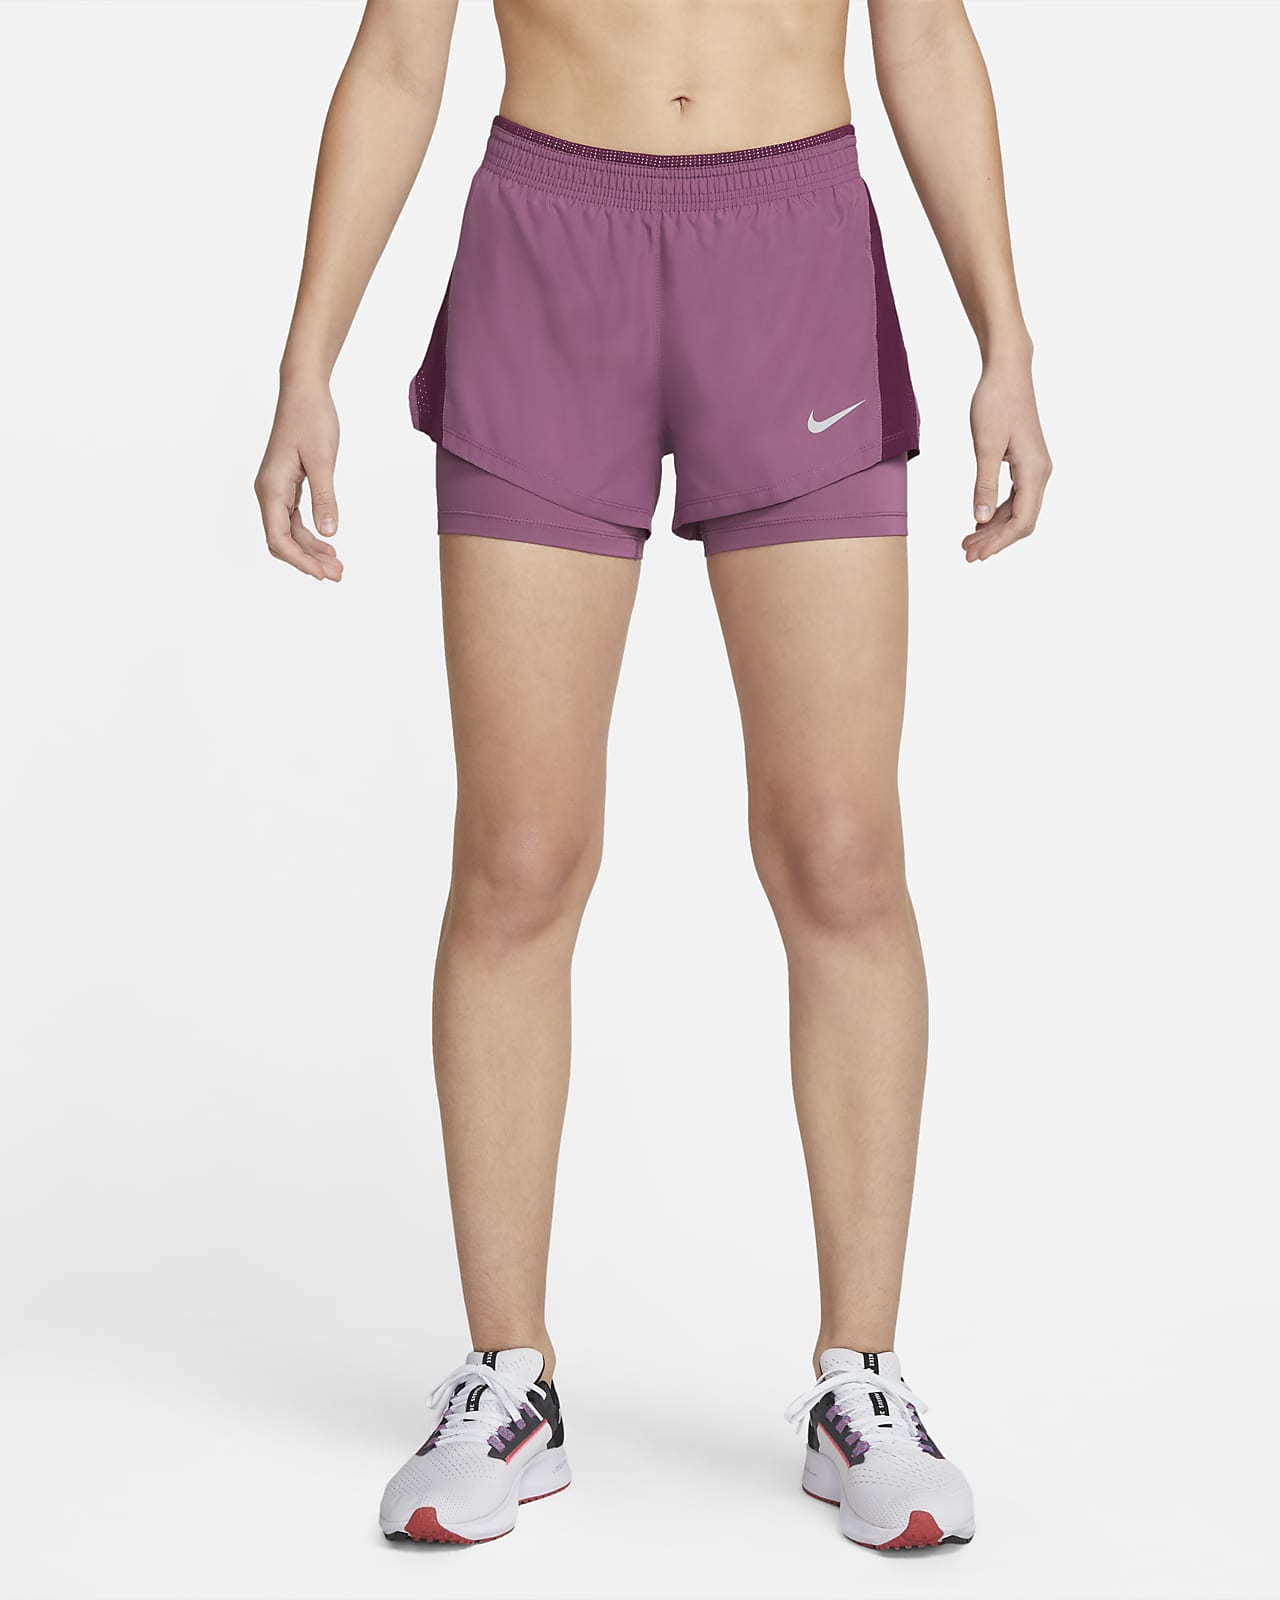 Nike 女款二合一跑步短褲